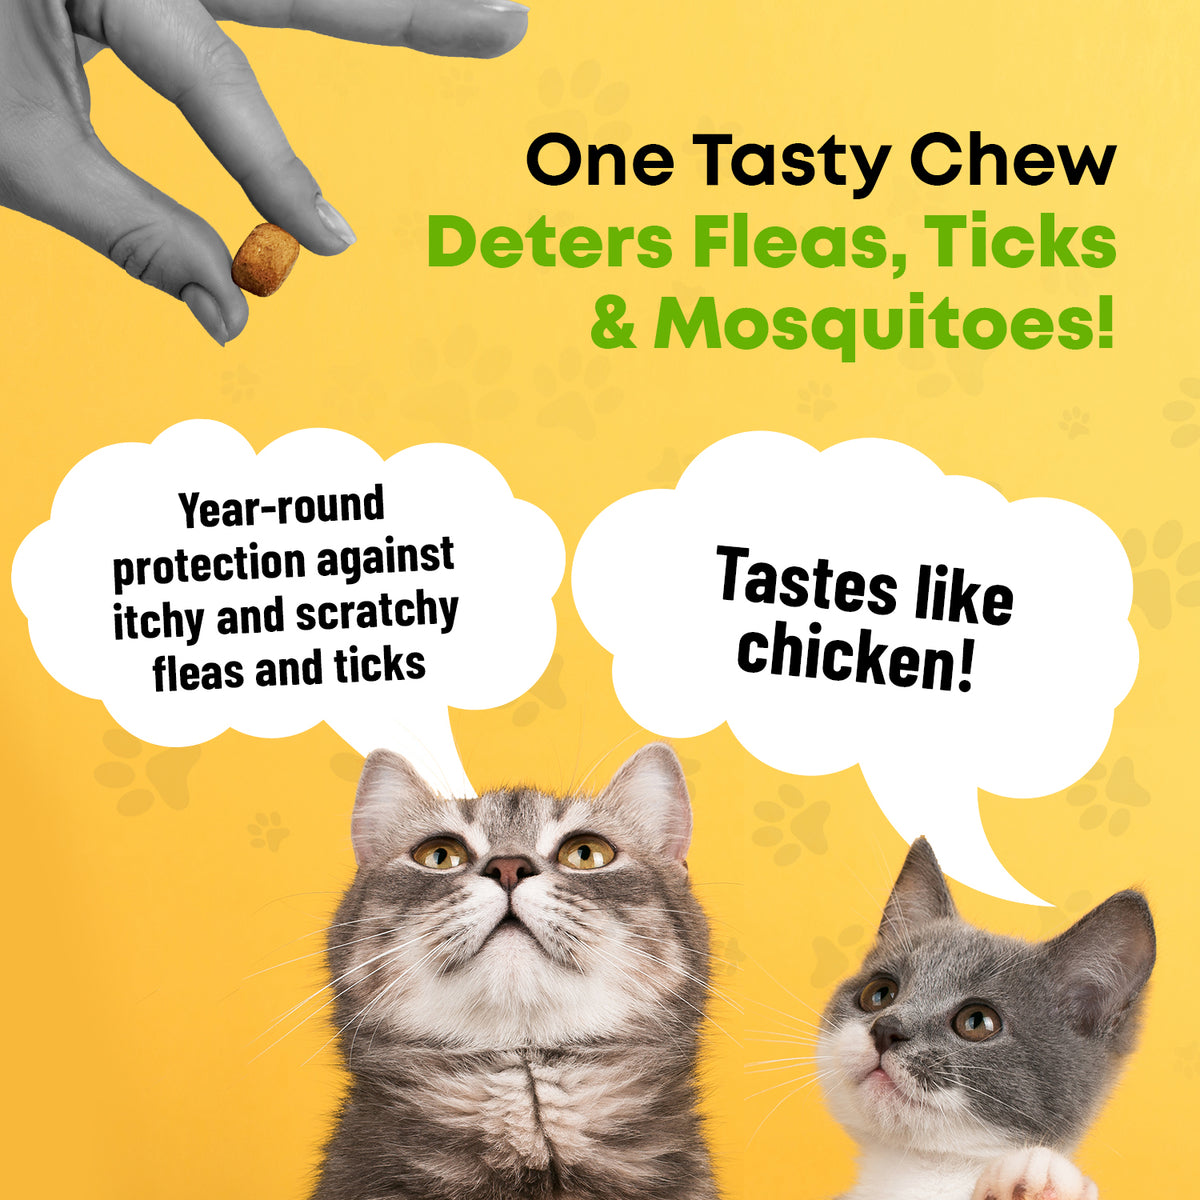 GCP Flea &amp; Tick Natural Defense for Cats - 100 Soft Chews